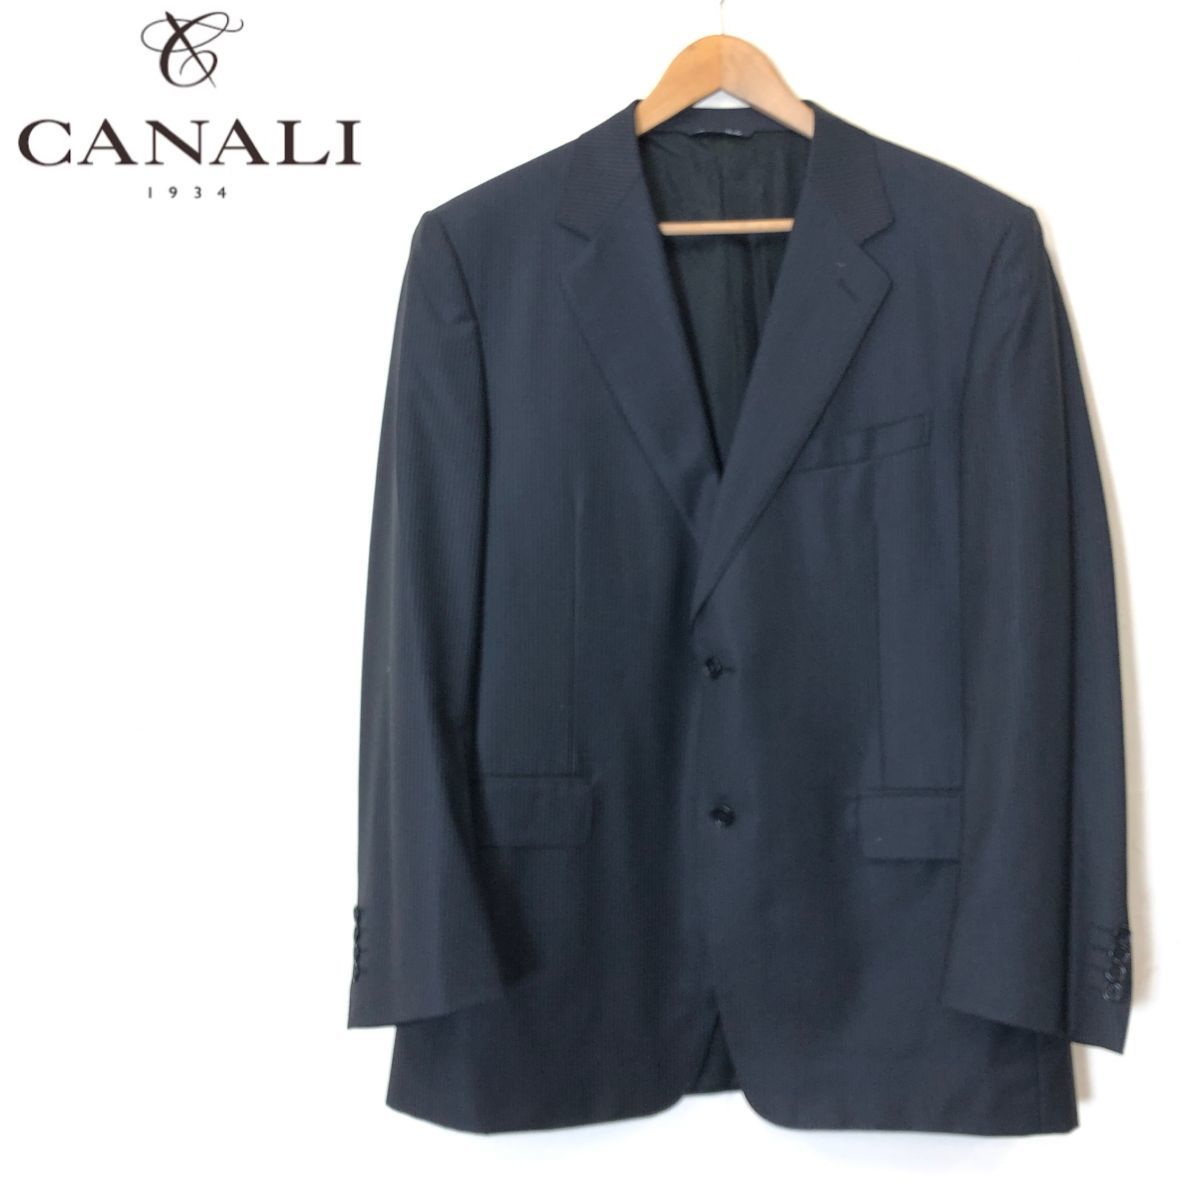 Yahoo!オークション -「canali スーツ」(メンズファッション) の落札 